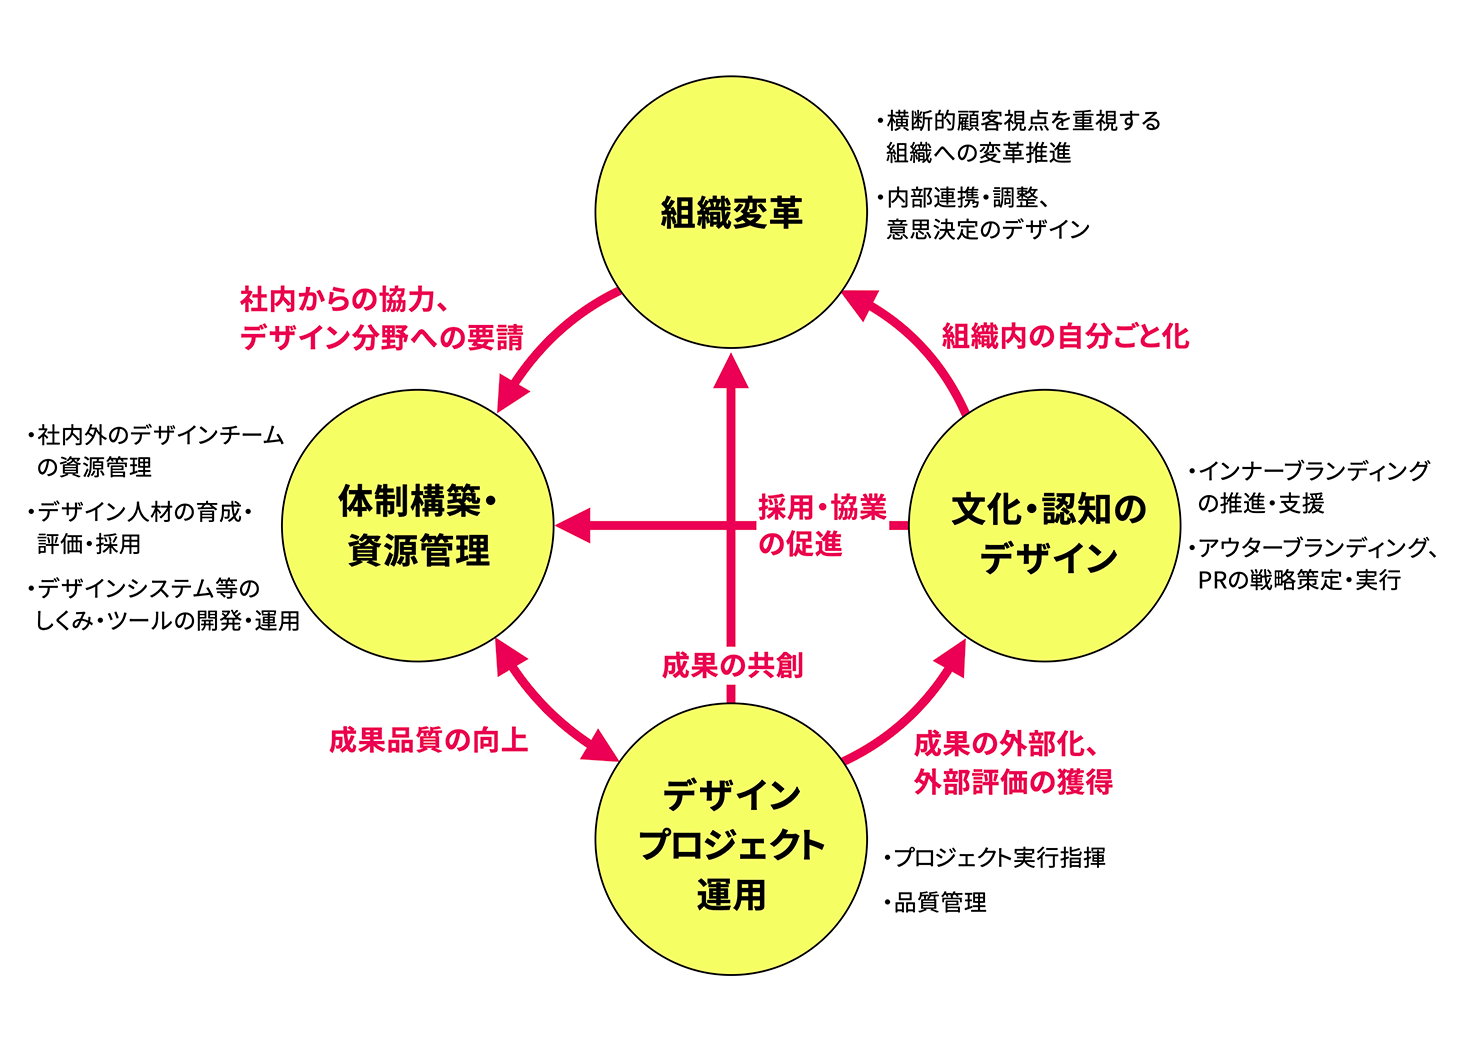 成長のループを表した図。反時計回りに「デザインプロジェクト運用」「文化・認知のデザイン」「組織改革」「体制構築／資源管理」が円状に並び、ループするように矢印で繋がっている。